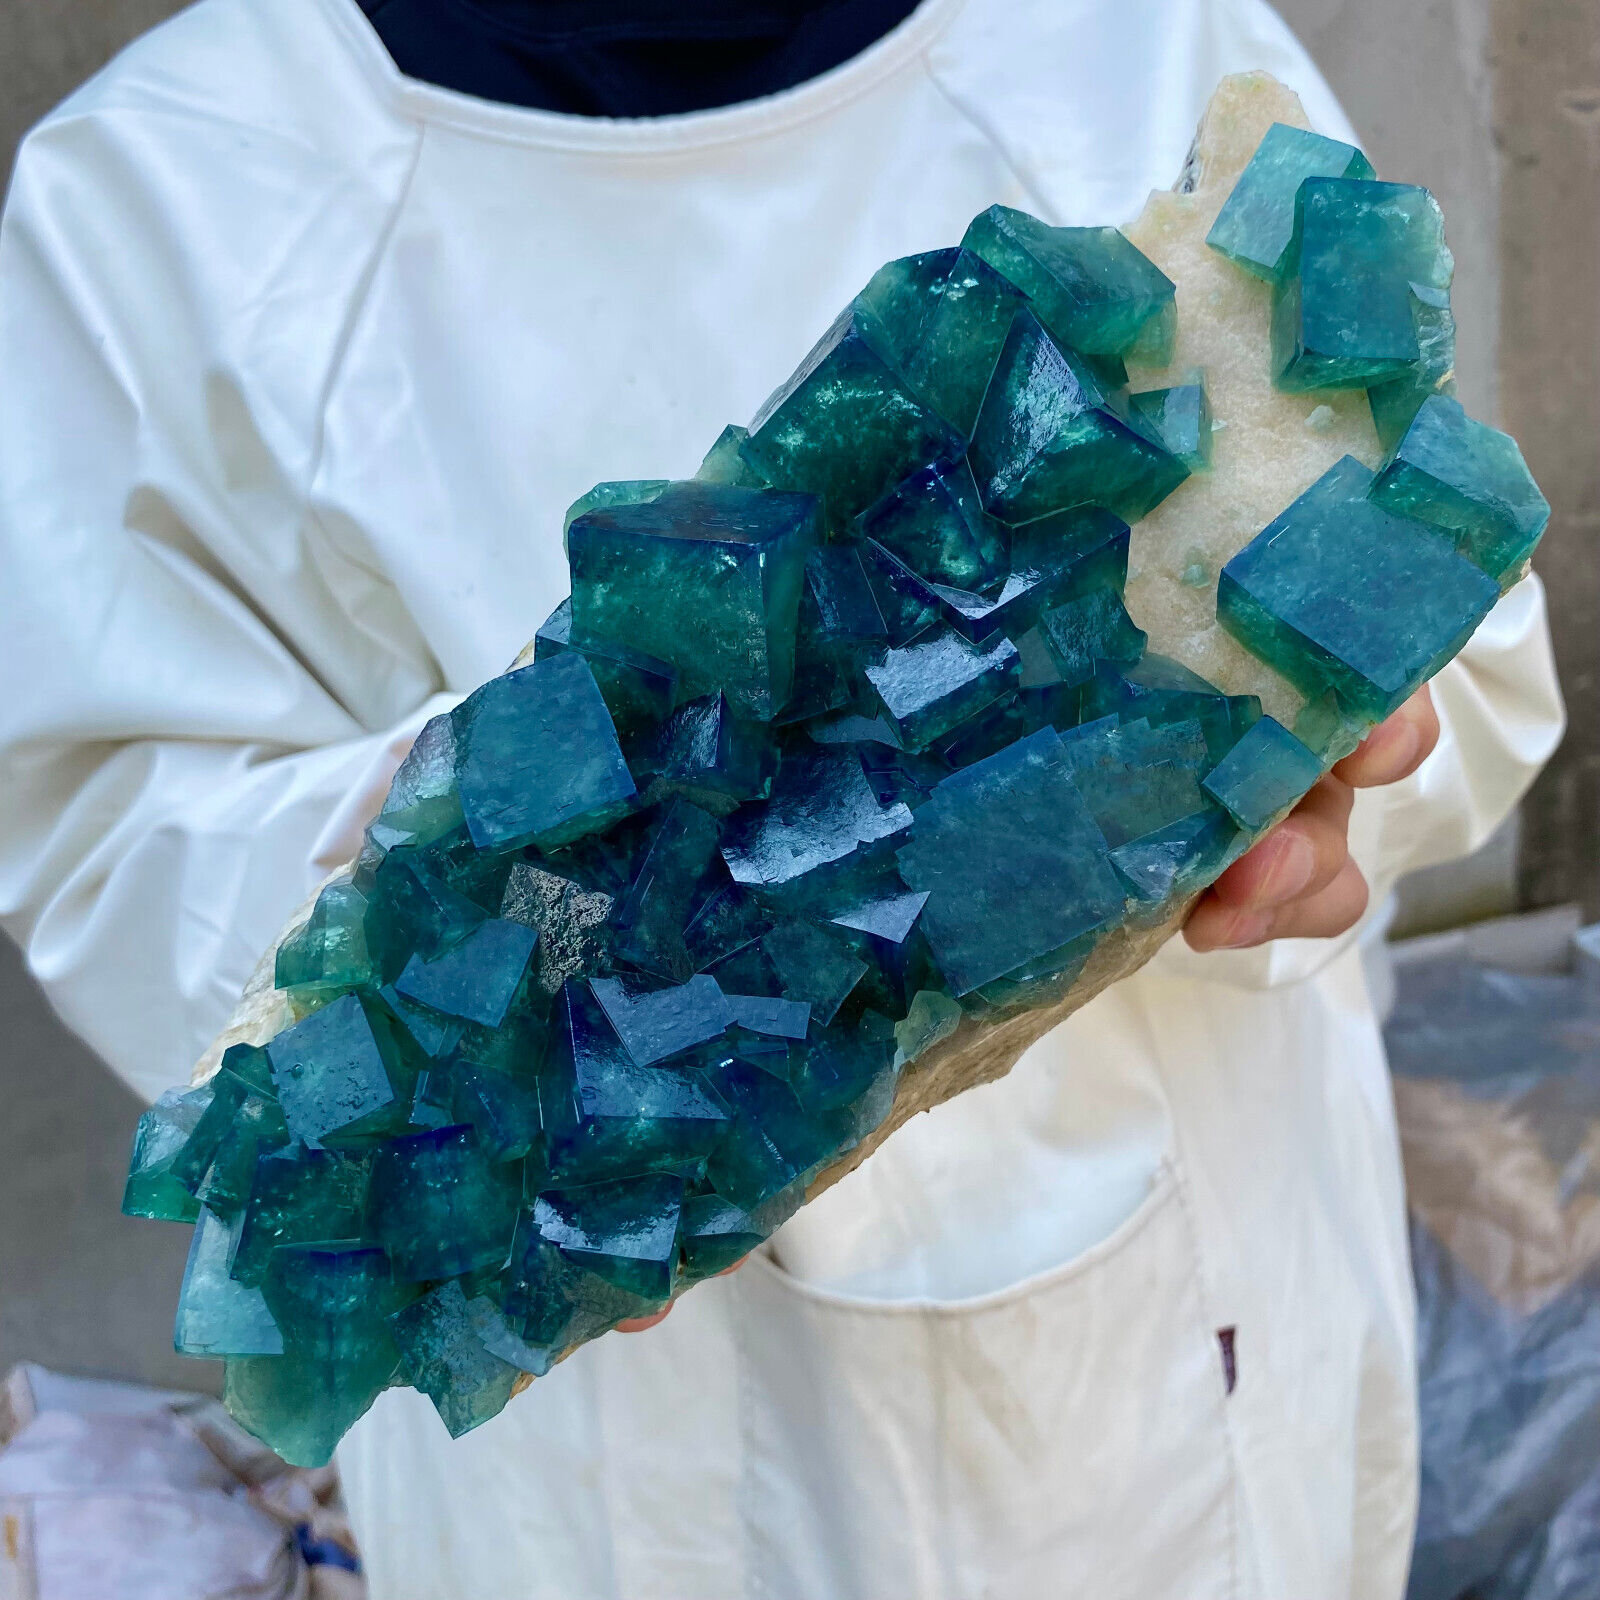 7.3lb Large NATURAL Green Cube FLUORITE Quartz Crystal Cluster Mineral Specimen